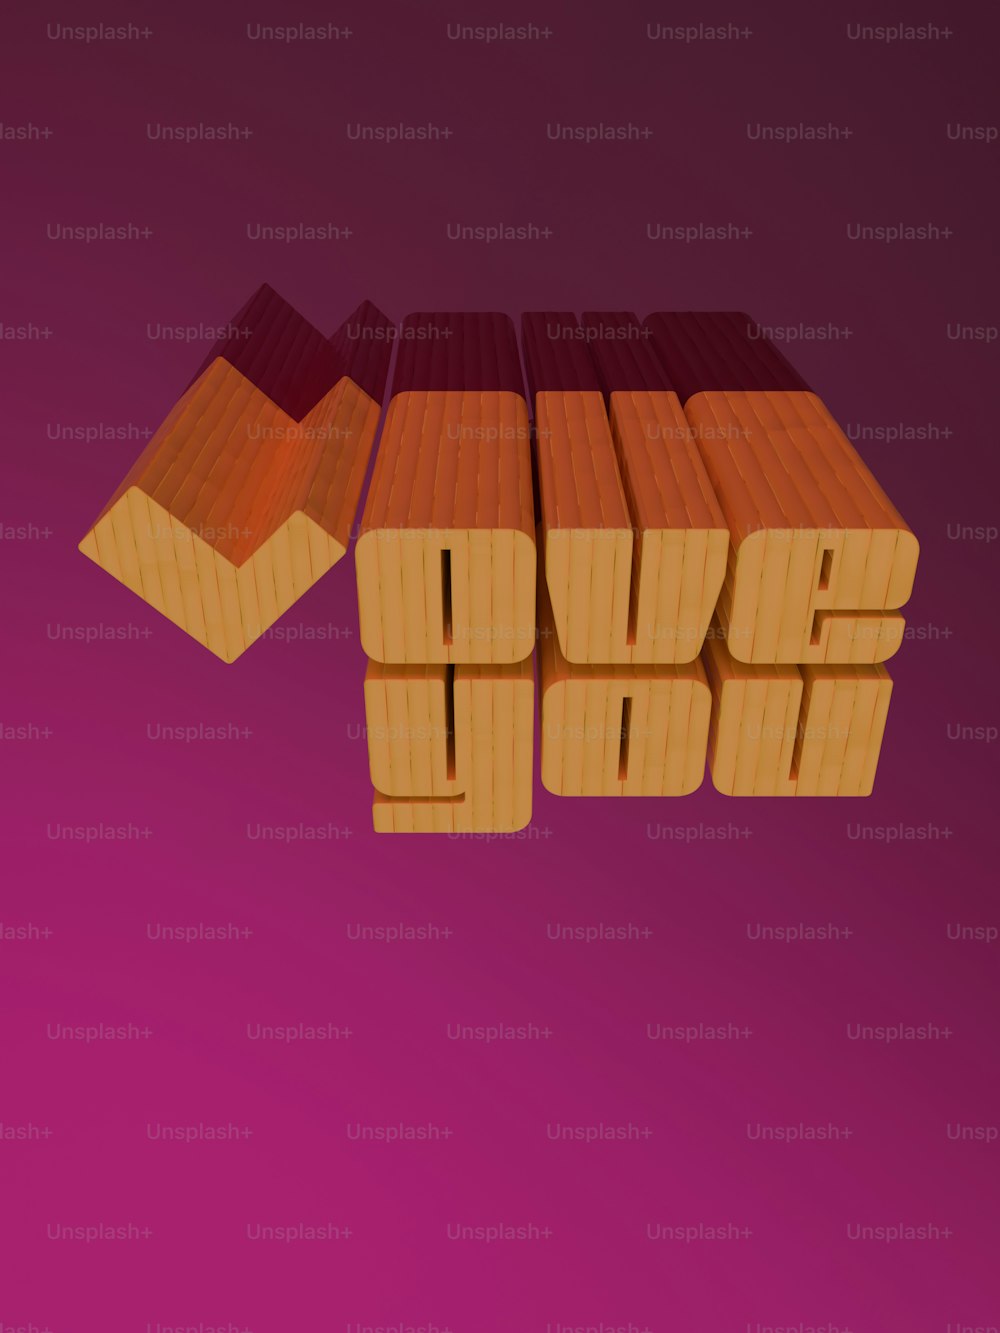 La palabra amor deletreada con bloques de madera